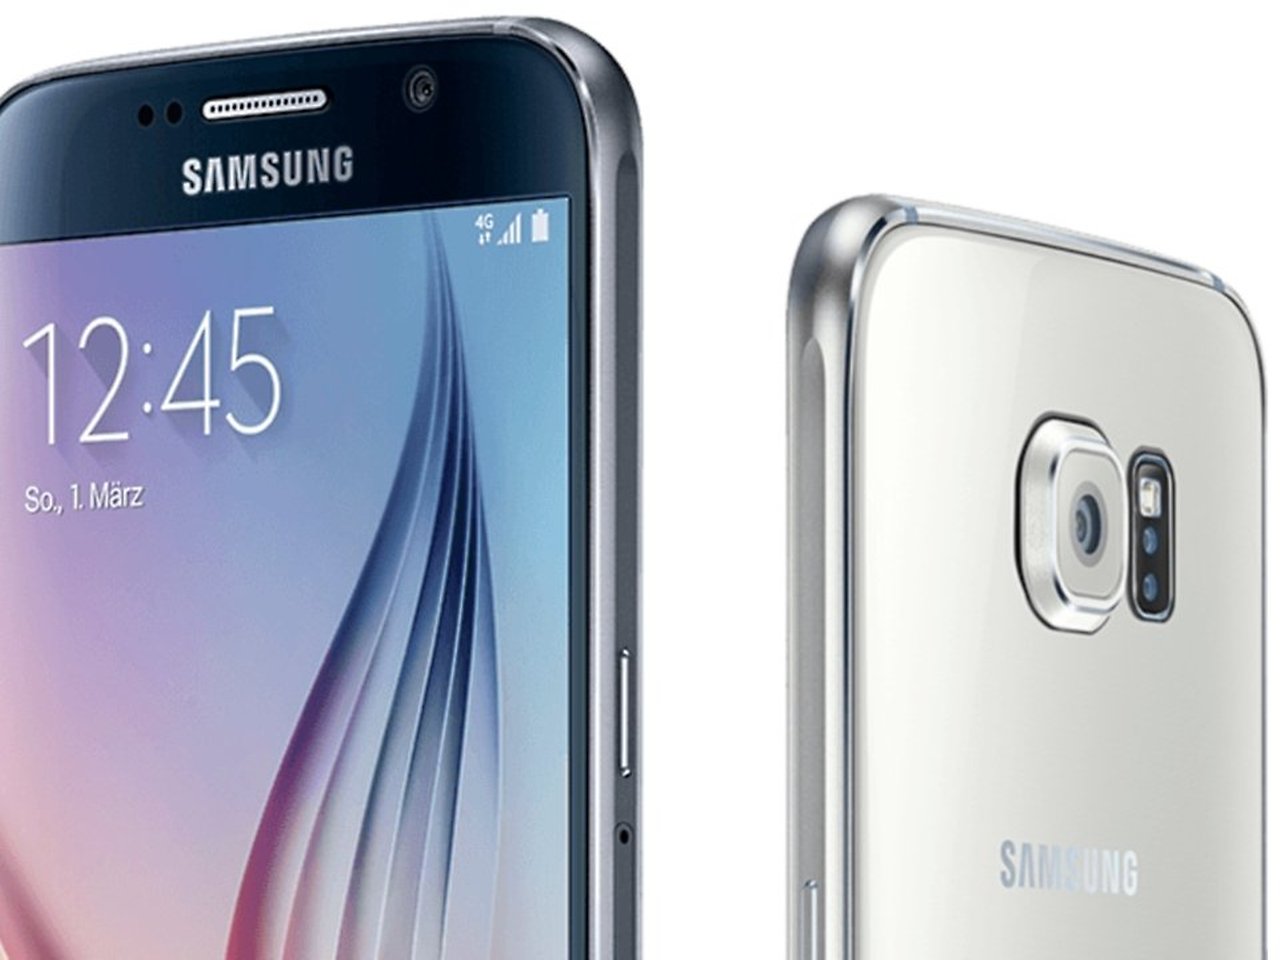 Beschrijving Vuilnisbak Krijt Samsung Galaxy S6 Mini: Preis, Release und technische Daten | NextPit